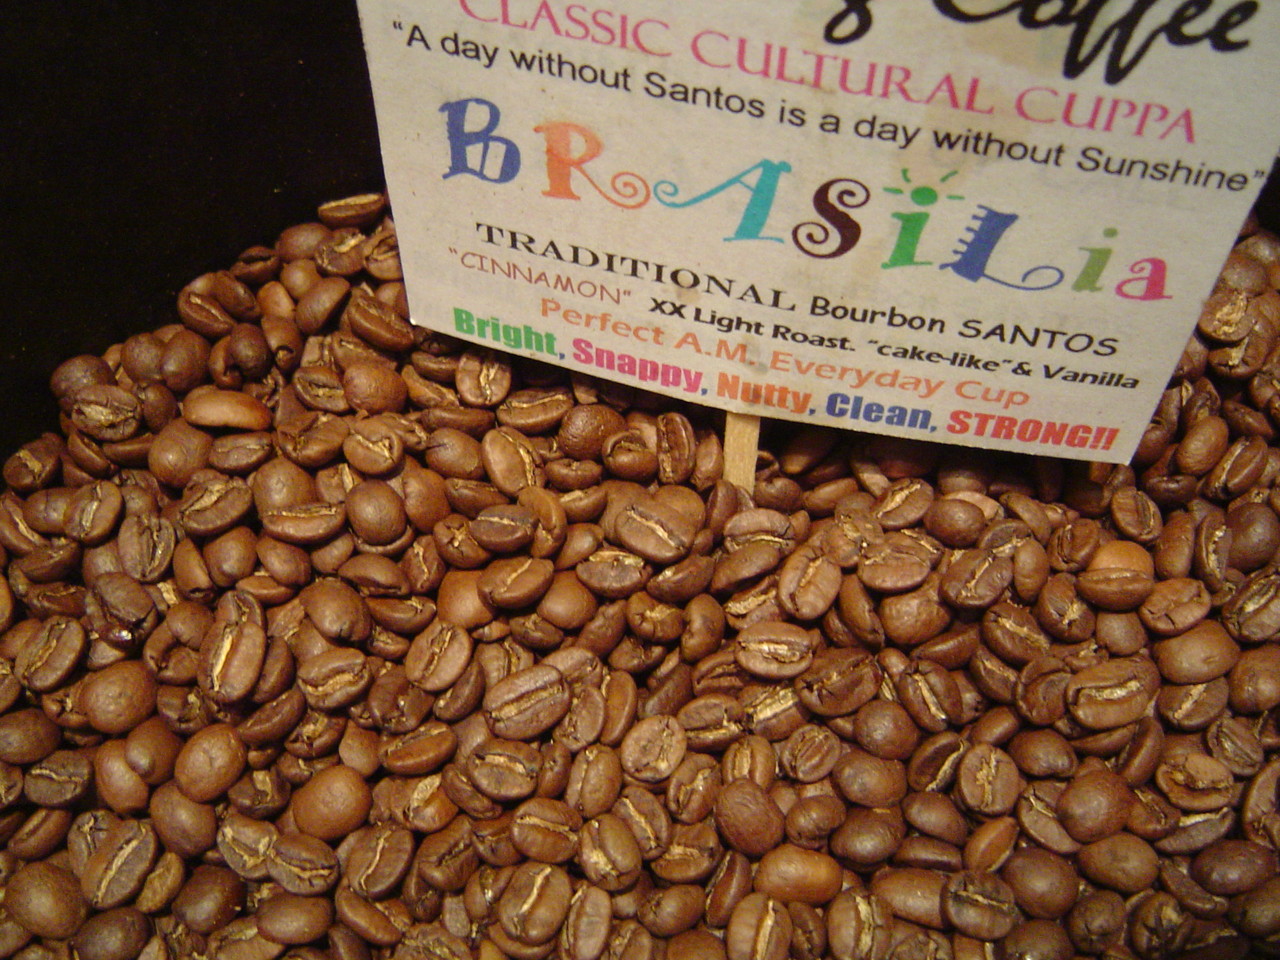 Бразильский кофе на мировом рынке. История успеха бразильской арабики